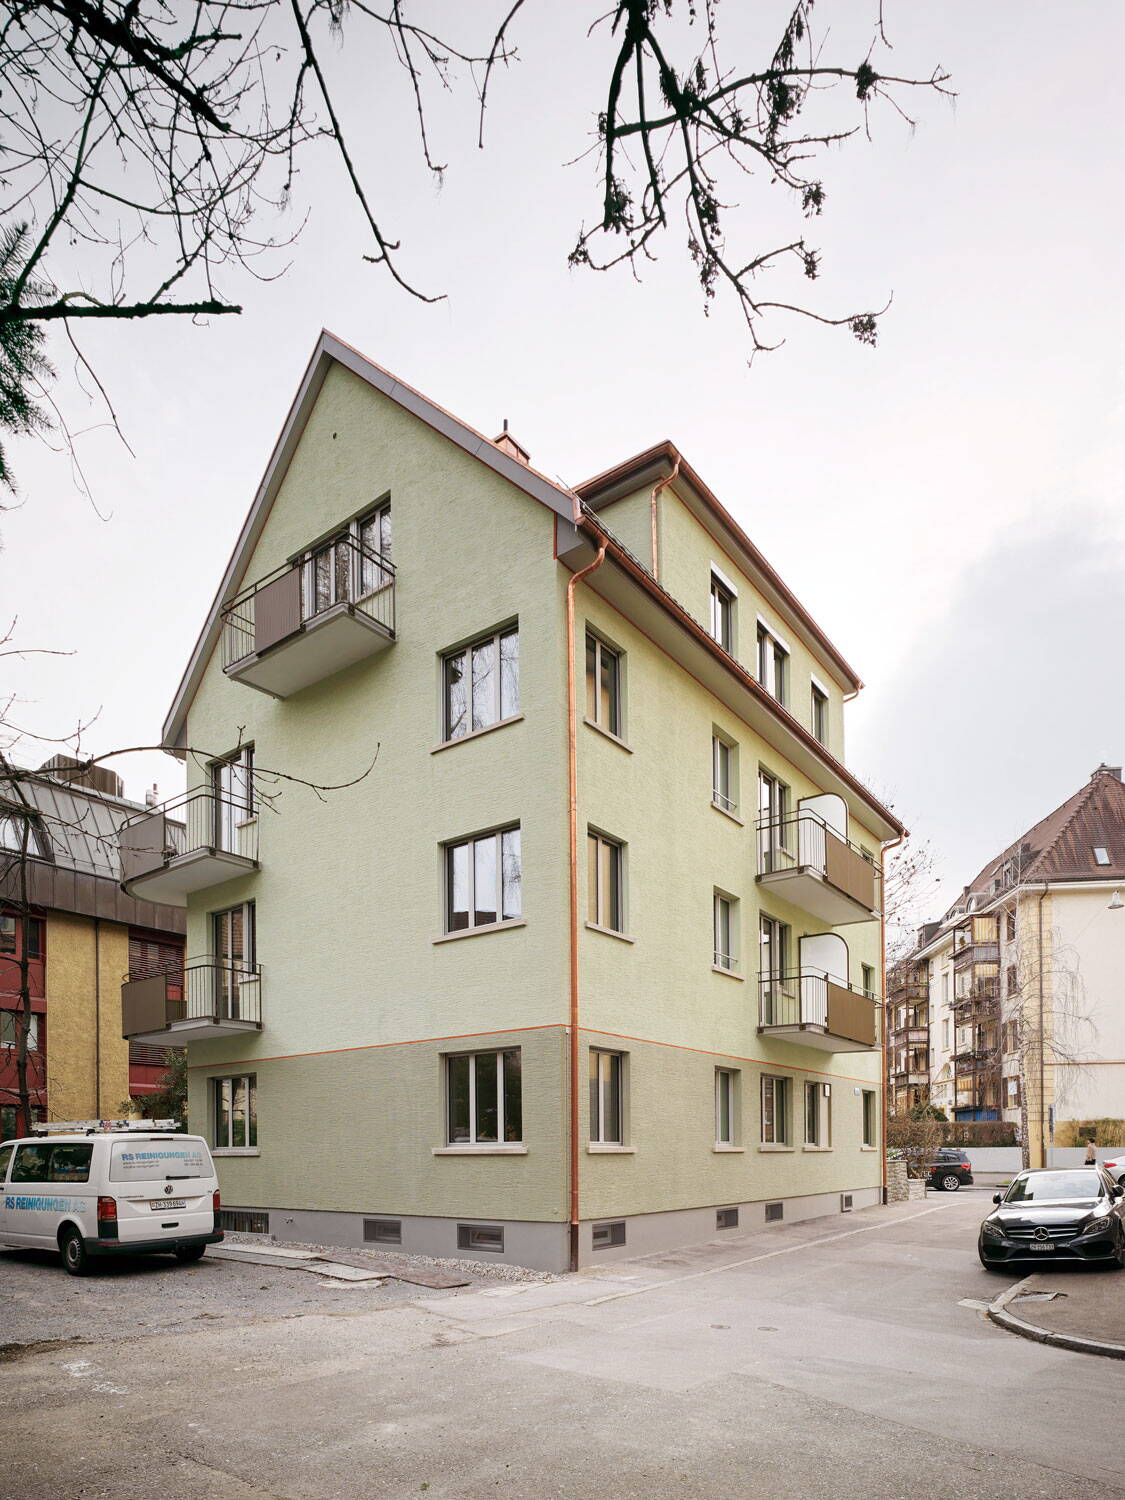 Mehrfamilienhaus, Milchbuck Zürich, seitliche Aussenansicht der grünen Fassade 